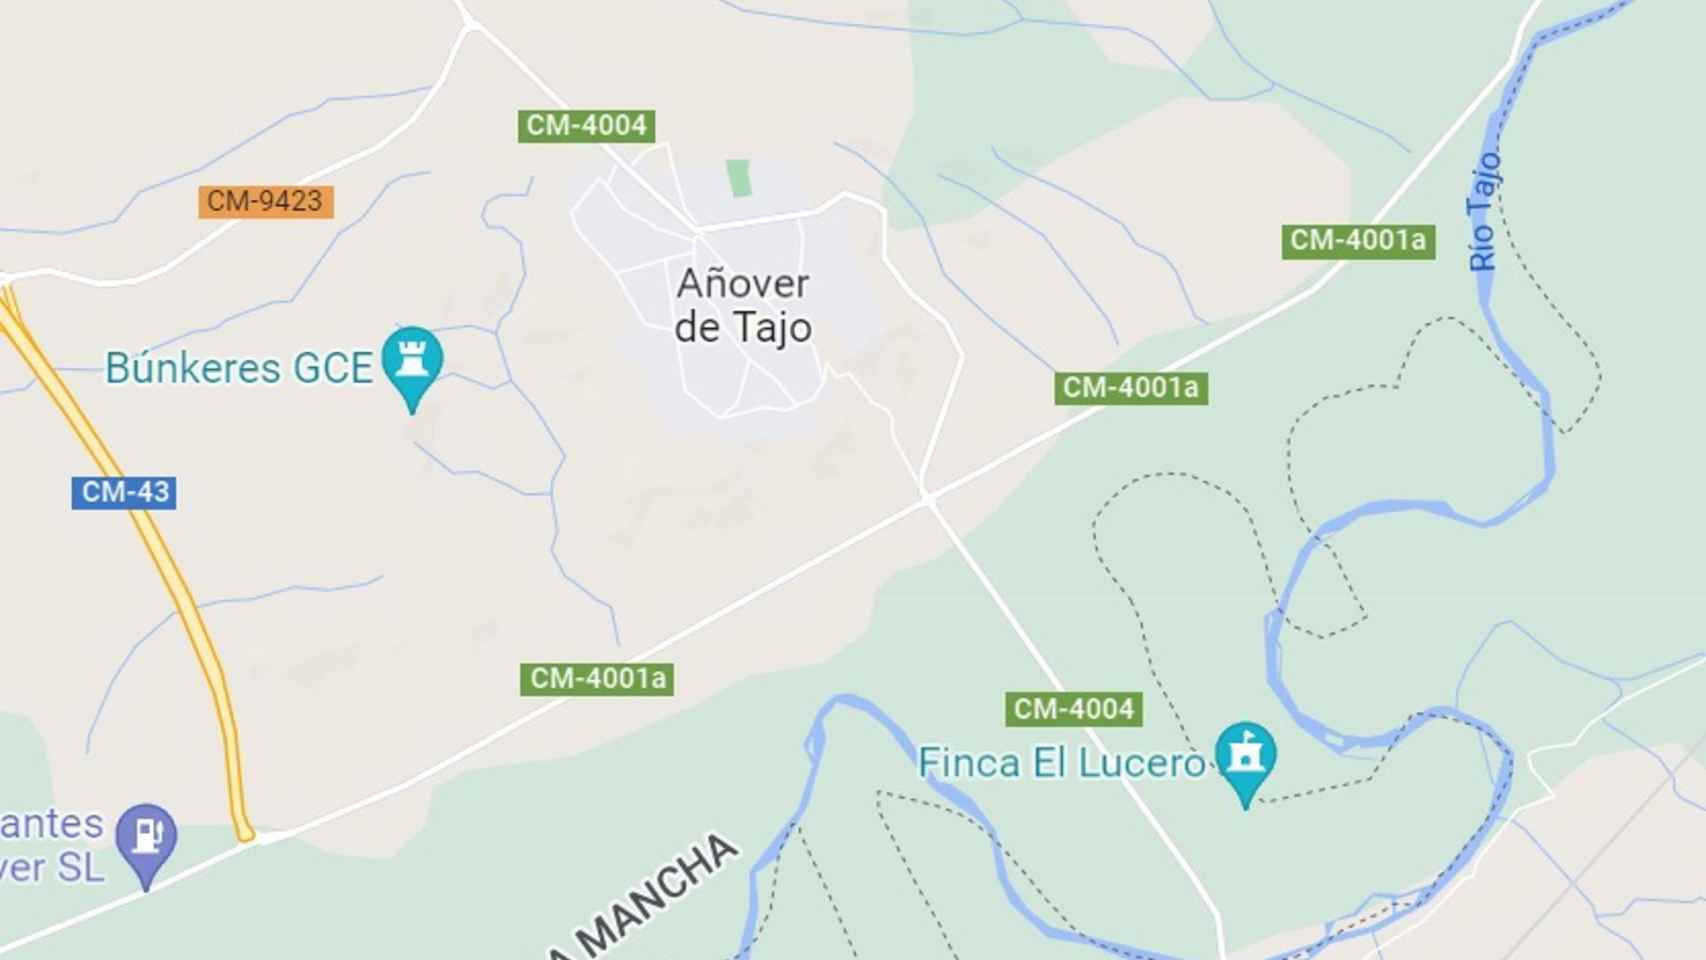 Añover de Tajo en Google Maps